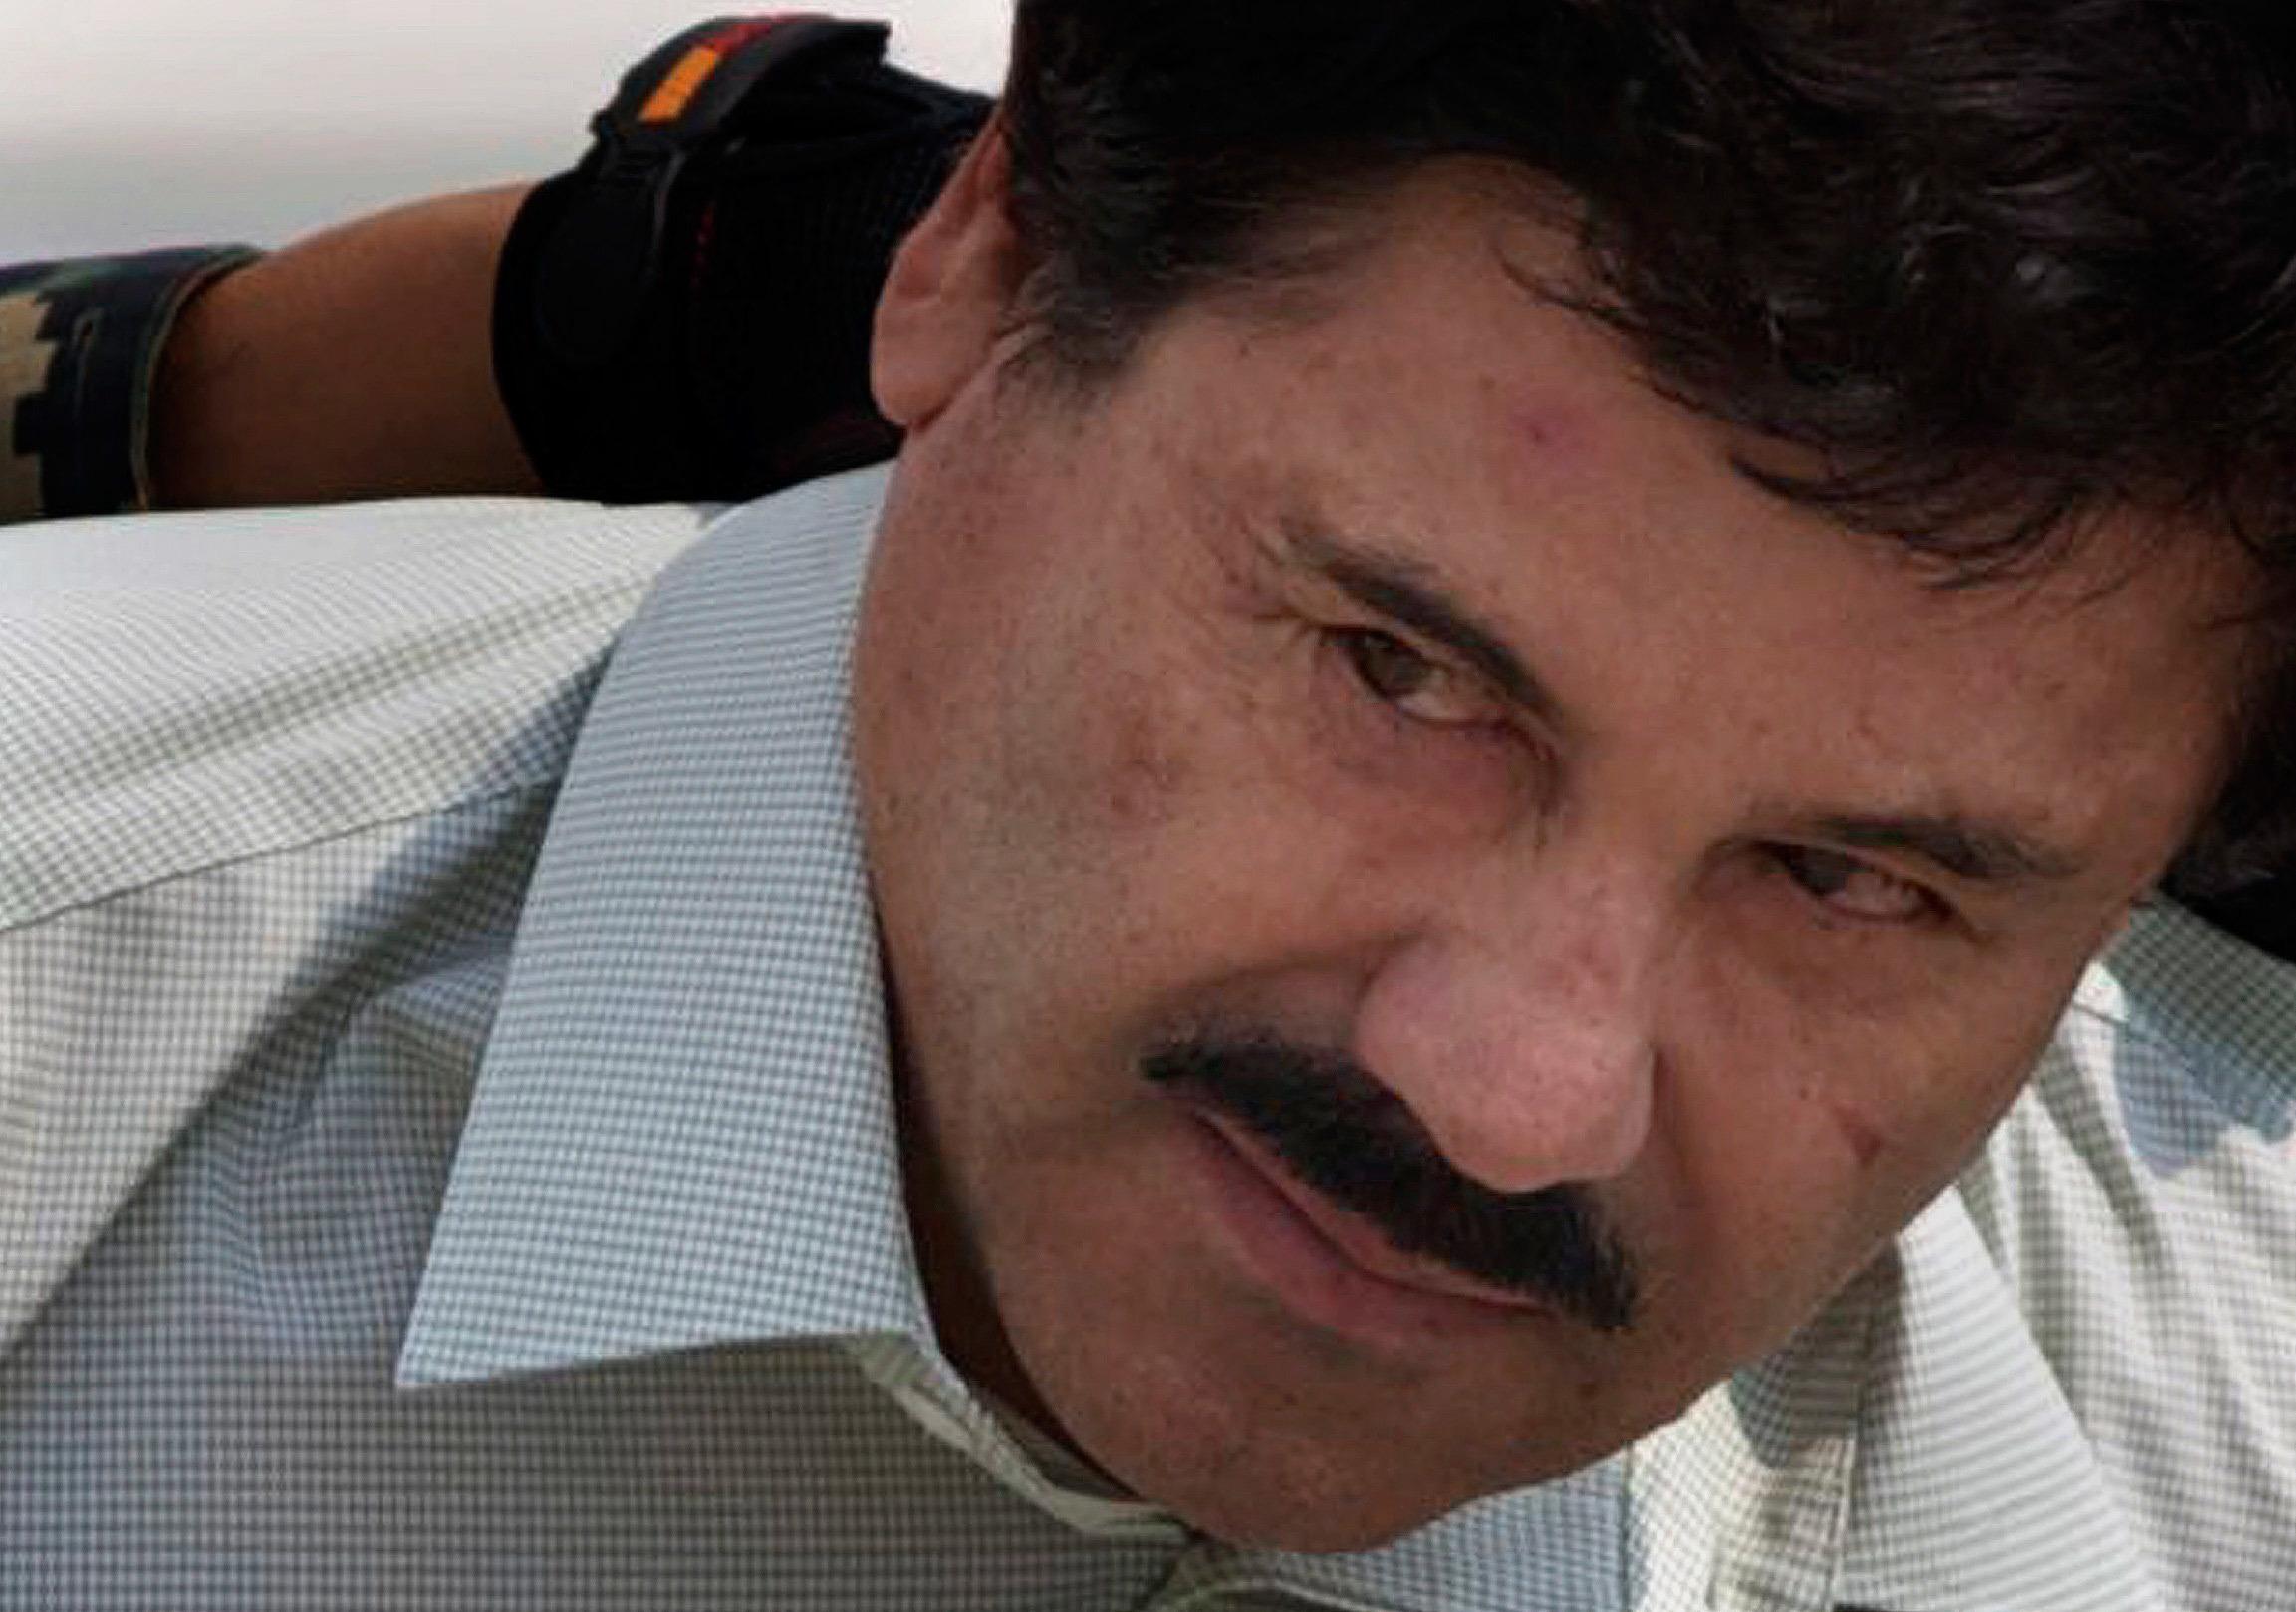  Resolverán extradición de ‘El Chapo’ 26 de septiembre